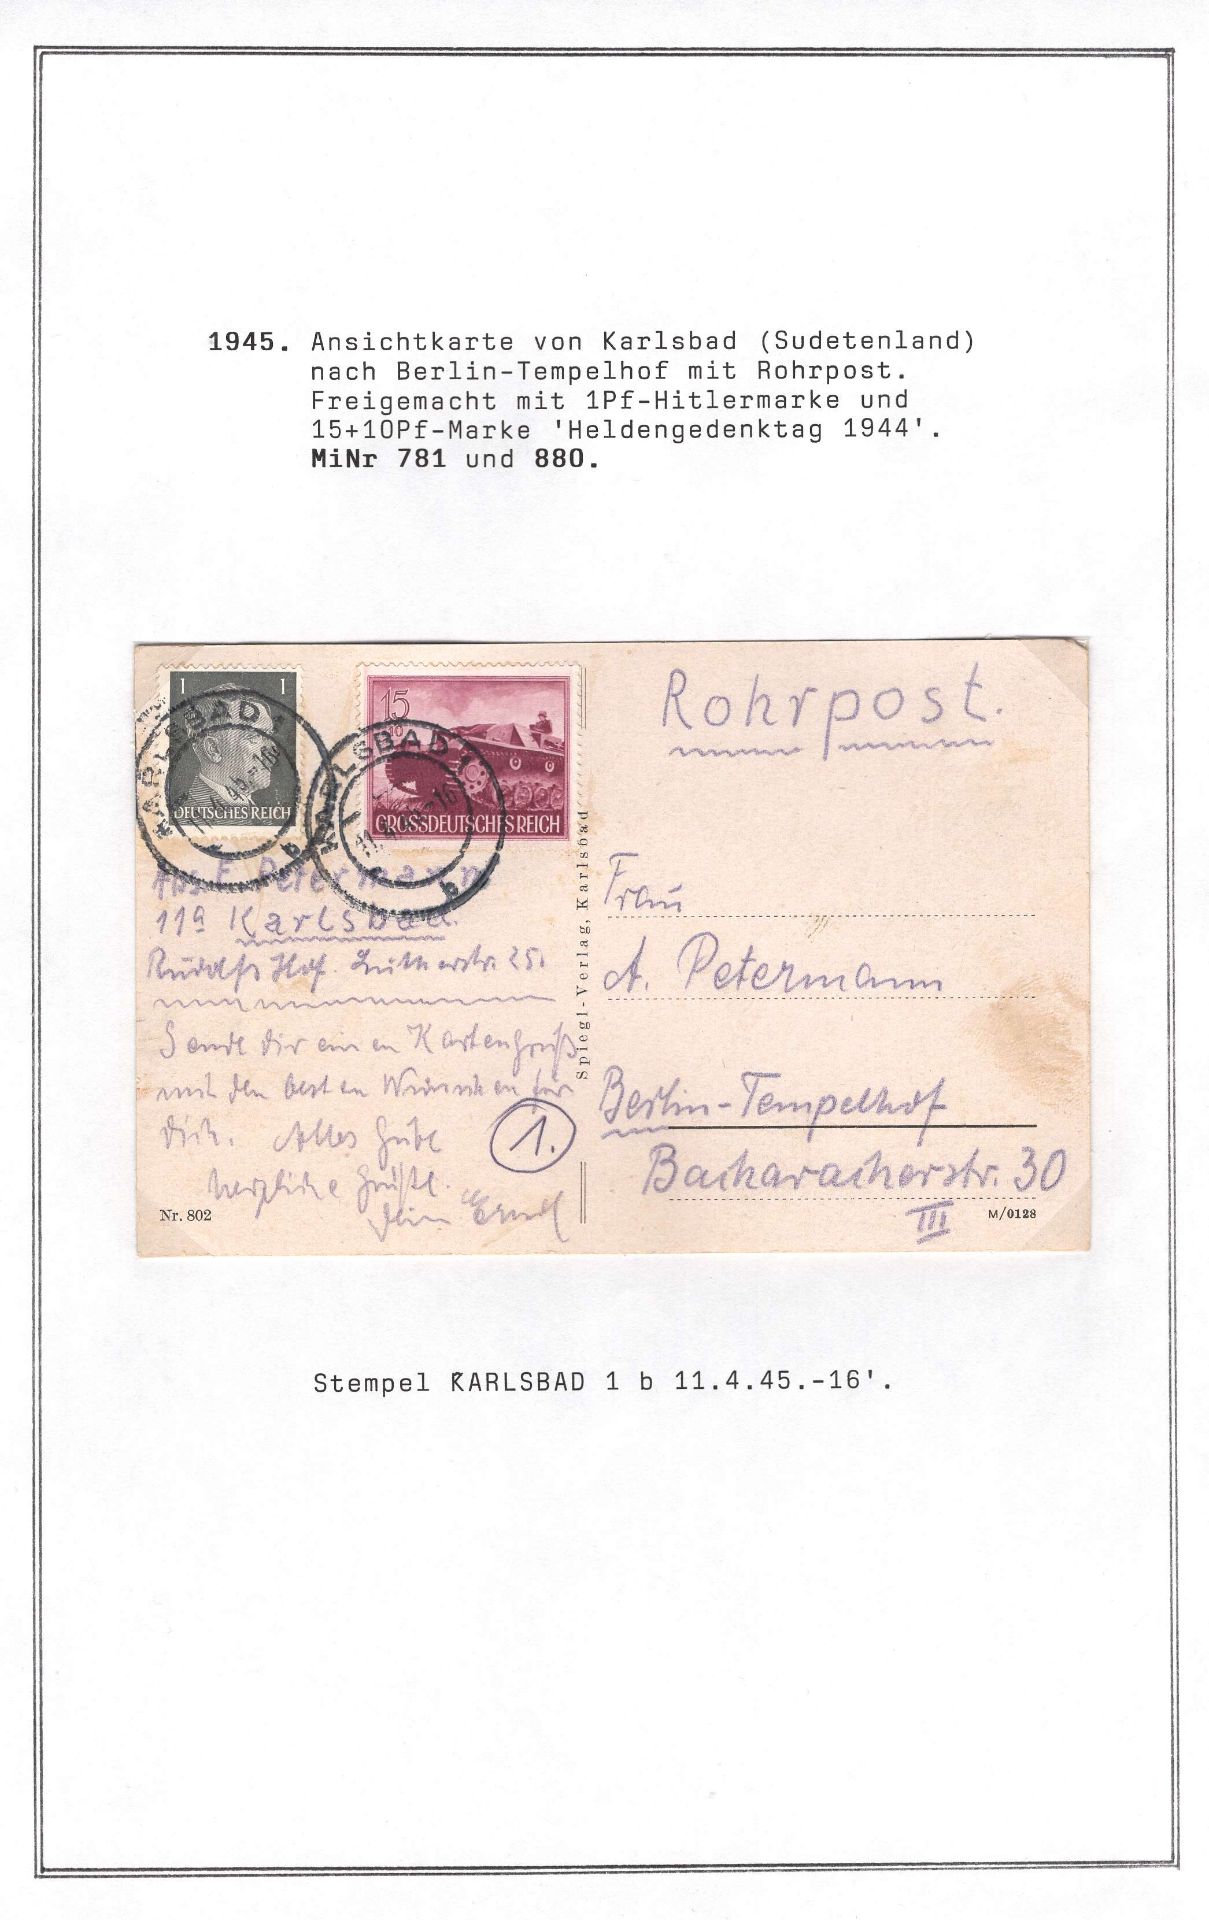 Deutsches Reich 1945, Rohr Postkarte, mit Mi. - Nr. 781, 880, gelaufen vom Sudetenland nach Berlin.